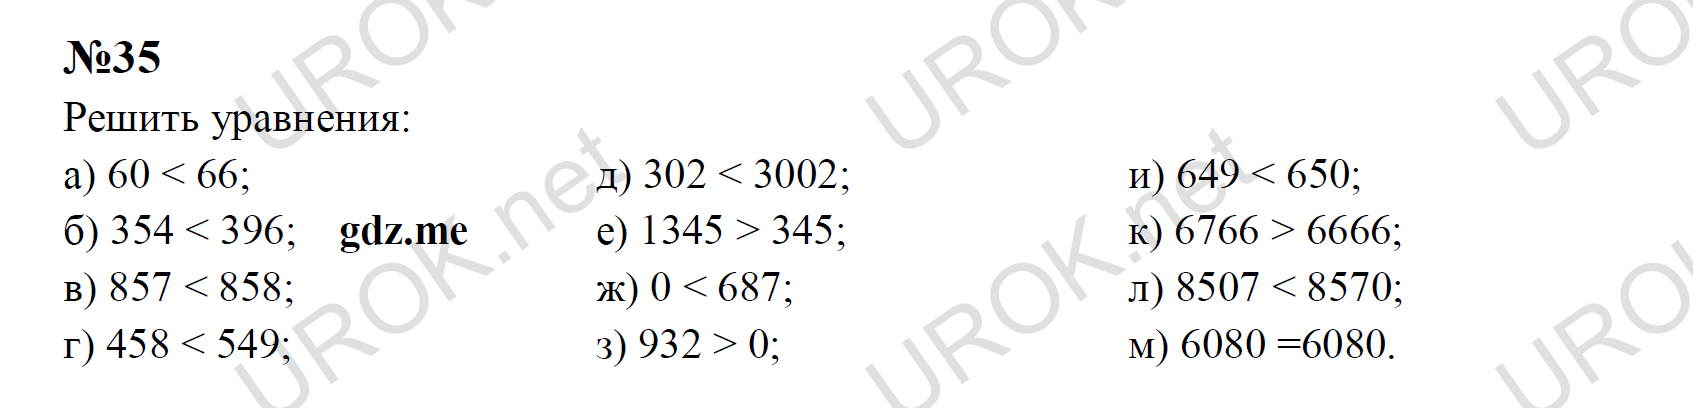 Ответ с подробным решением задания Математика 5 класс Никольский: 35 Решить уравнения:  а) 60 < 66; б) 354 < 396;     в) 857 < 858; г) 458 < 549; д) 302 < 3002; е) 1345 > 345; ж) 0 < 687; з) 932 > 0; и) 649 < 650; к) 6766 > 6666; л) 8507 < 8570; м) 6080 =6080.